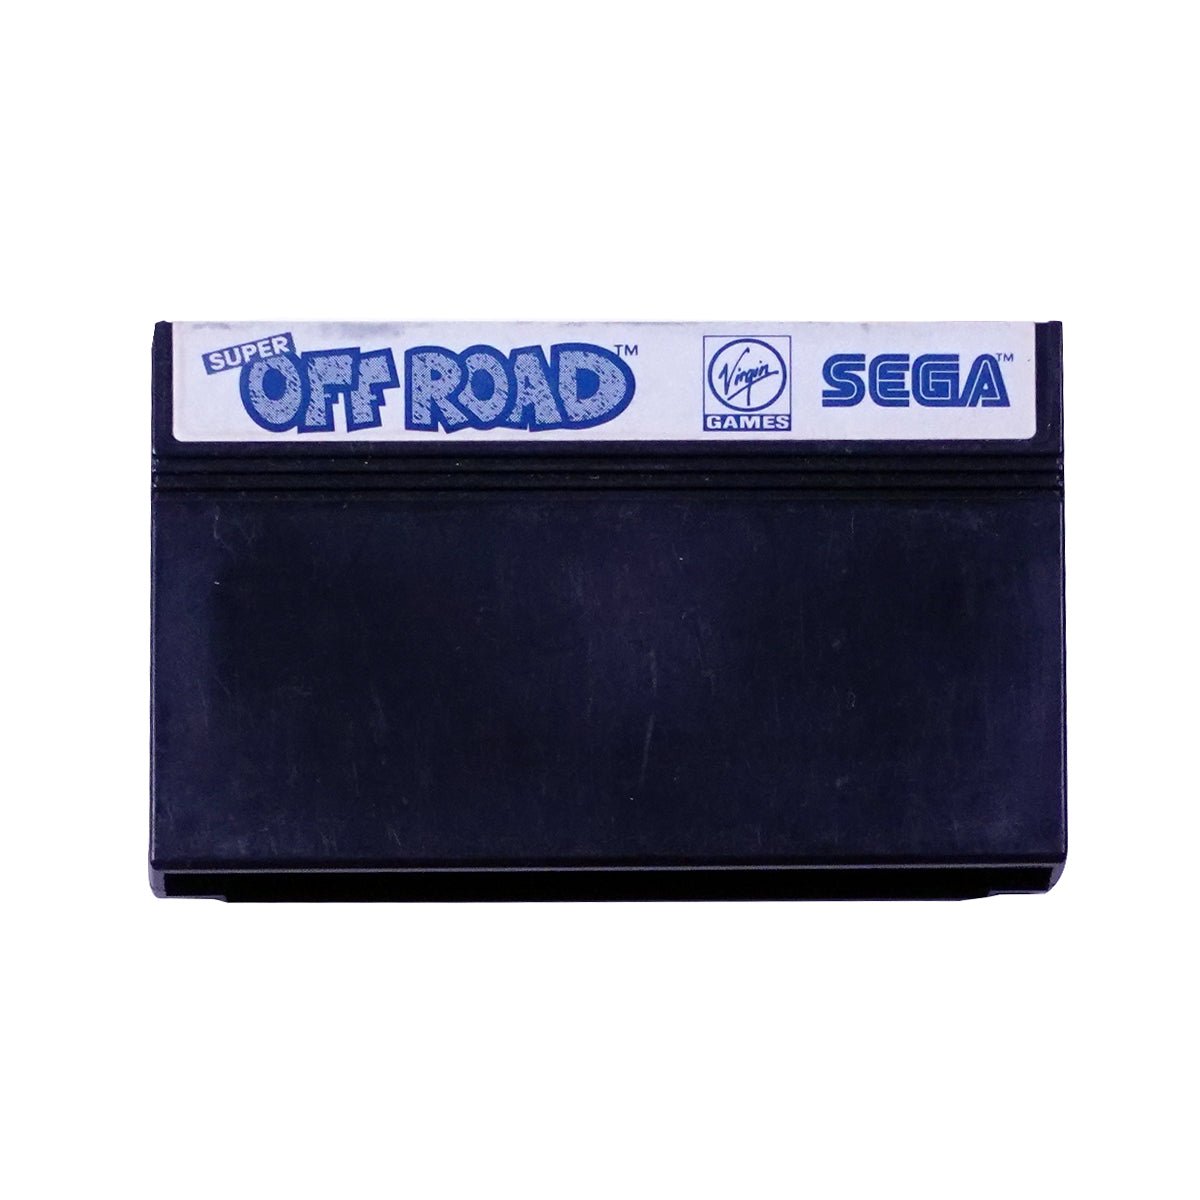 (Pre-Owned) Super Off Road - Sega Master Game - ريترو - Store 974 | ستور ٩٧٤